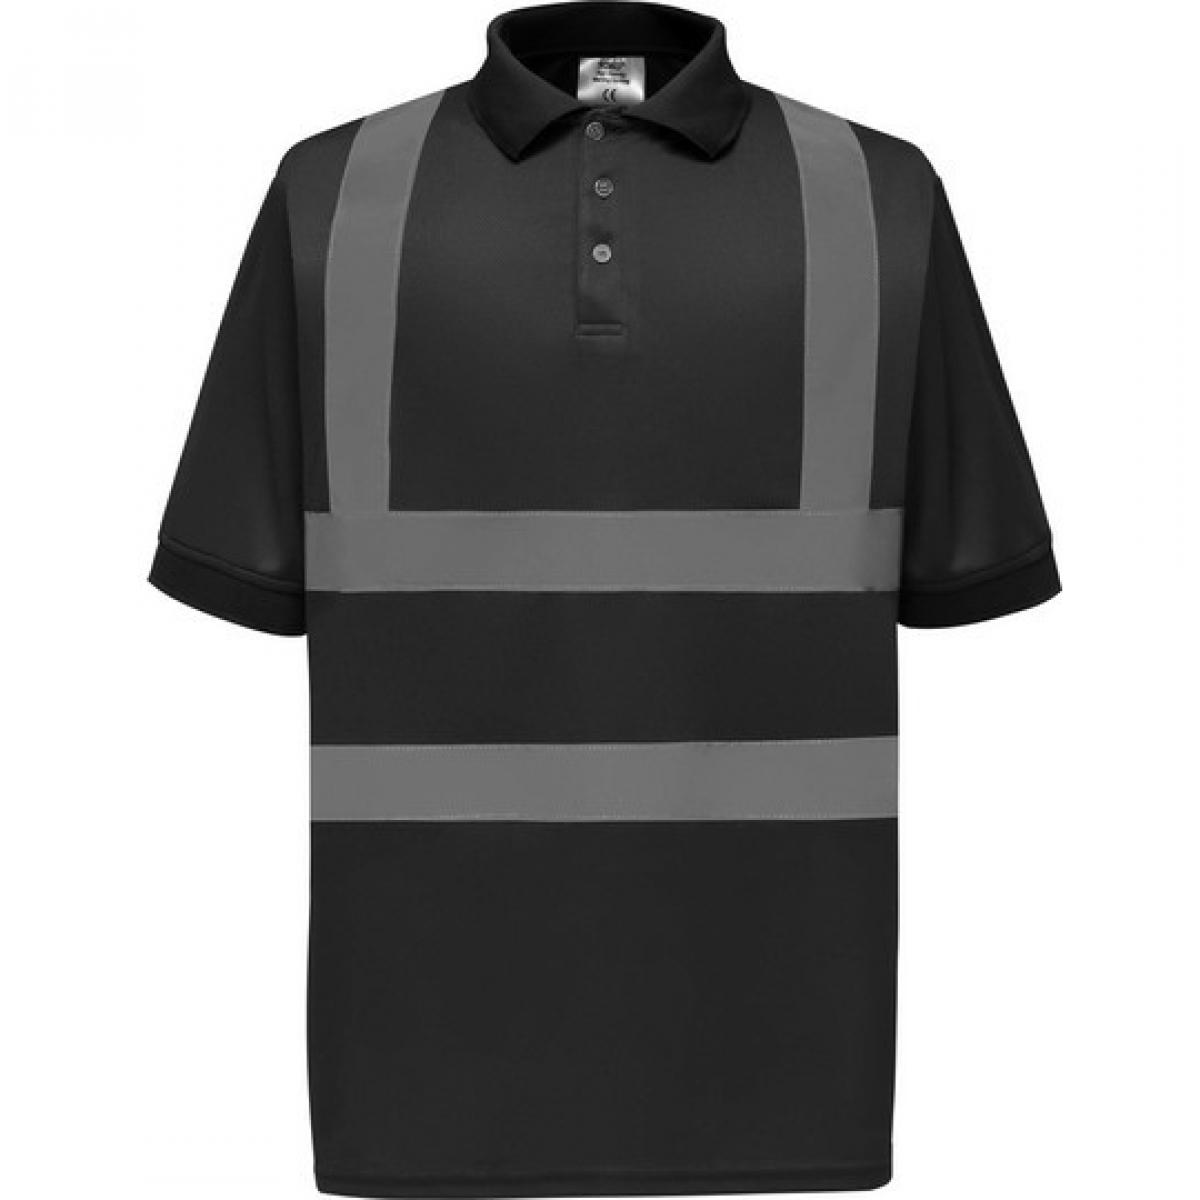 Hersteller: YOKO Herstellernummer: HVJ210 Artikelbezeichnung: Herren Sicherheits Polo Shirt EN ISO 20471 bis 6XL Farbe: Black